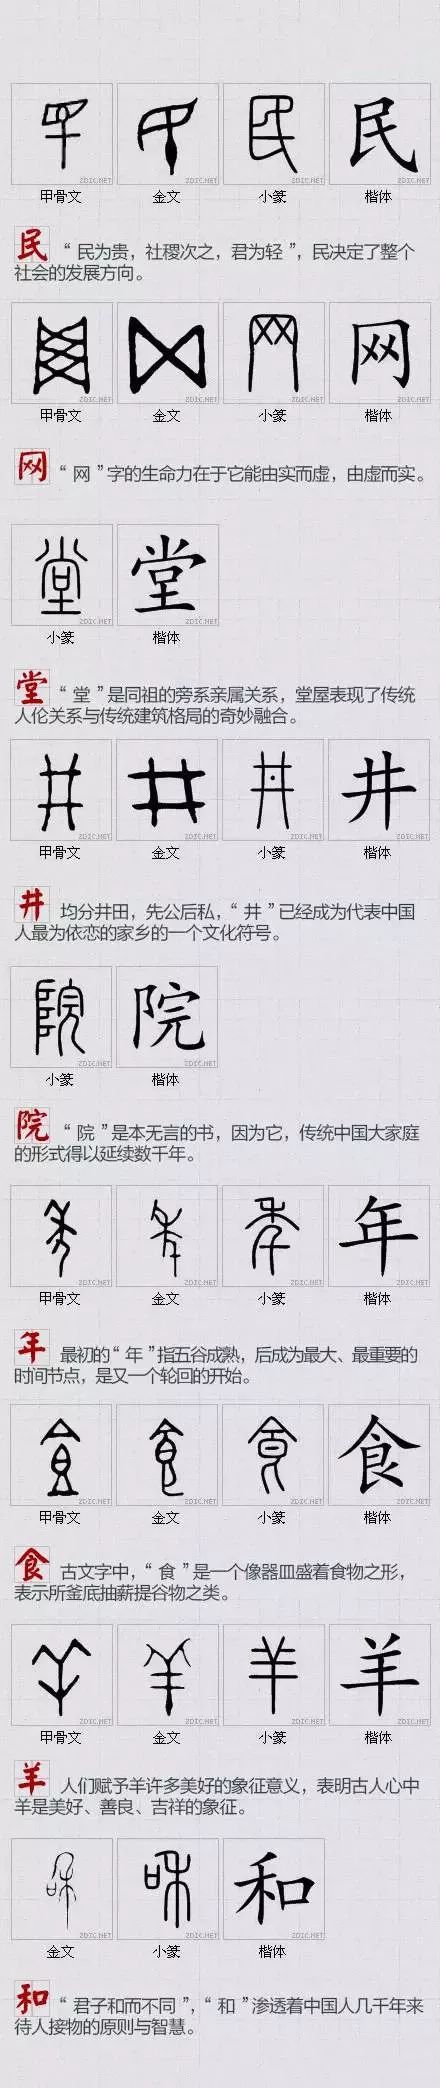 汉字,是中华民族文化的化石